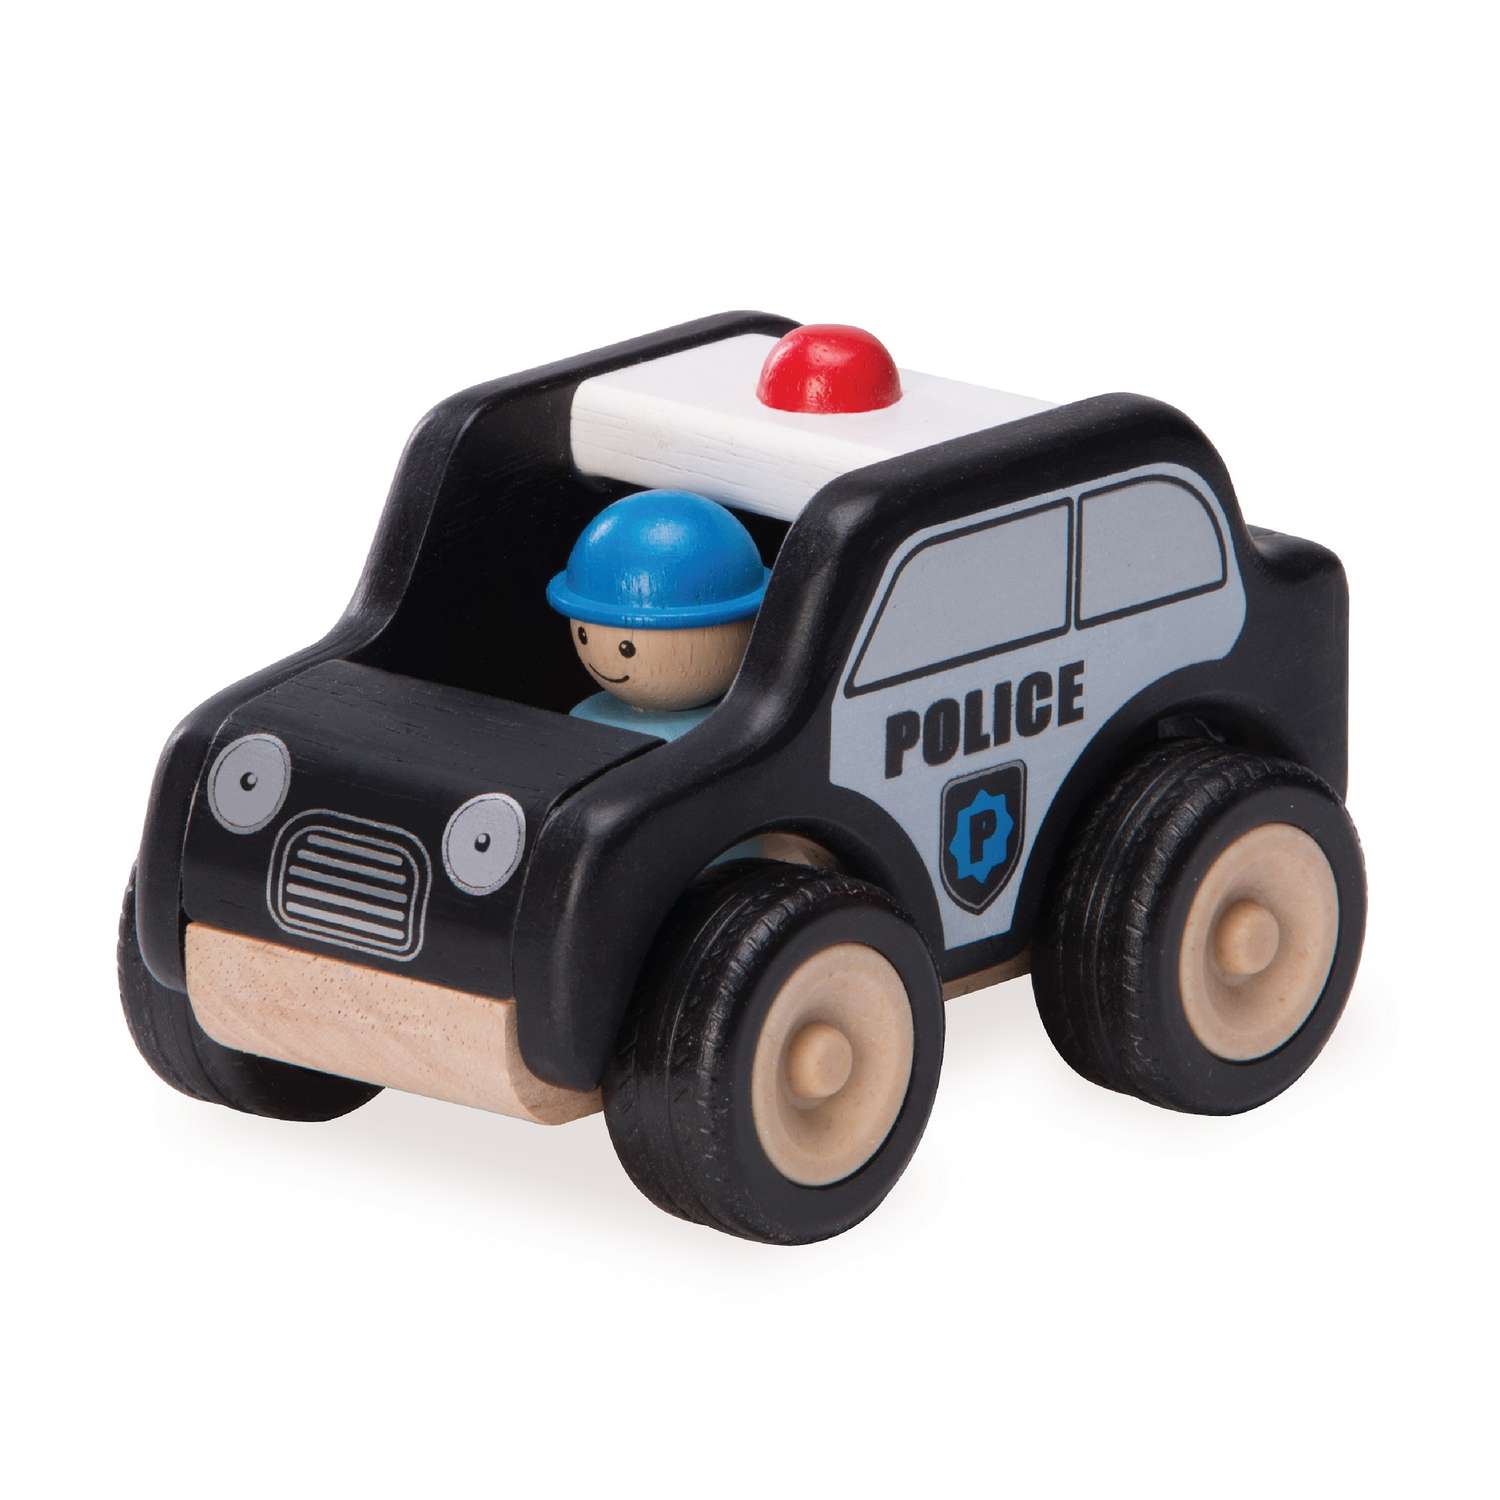 Полицейская машинка Wonderworld деревянная игрушка Miniworld ww-4061 - фото 2